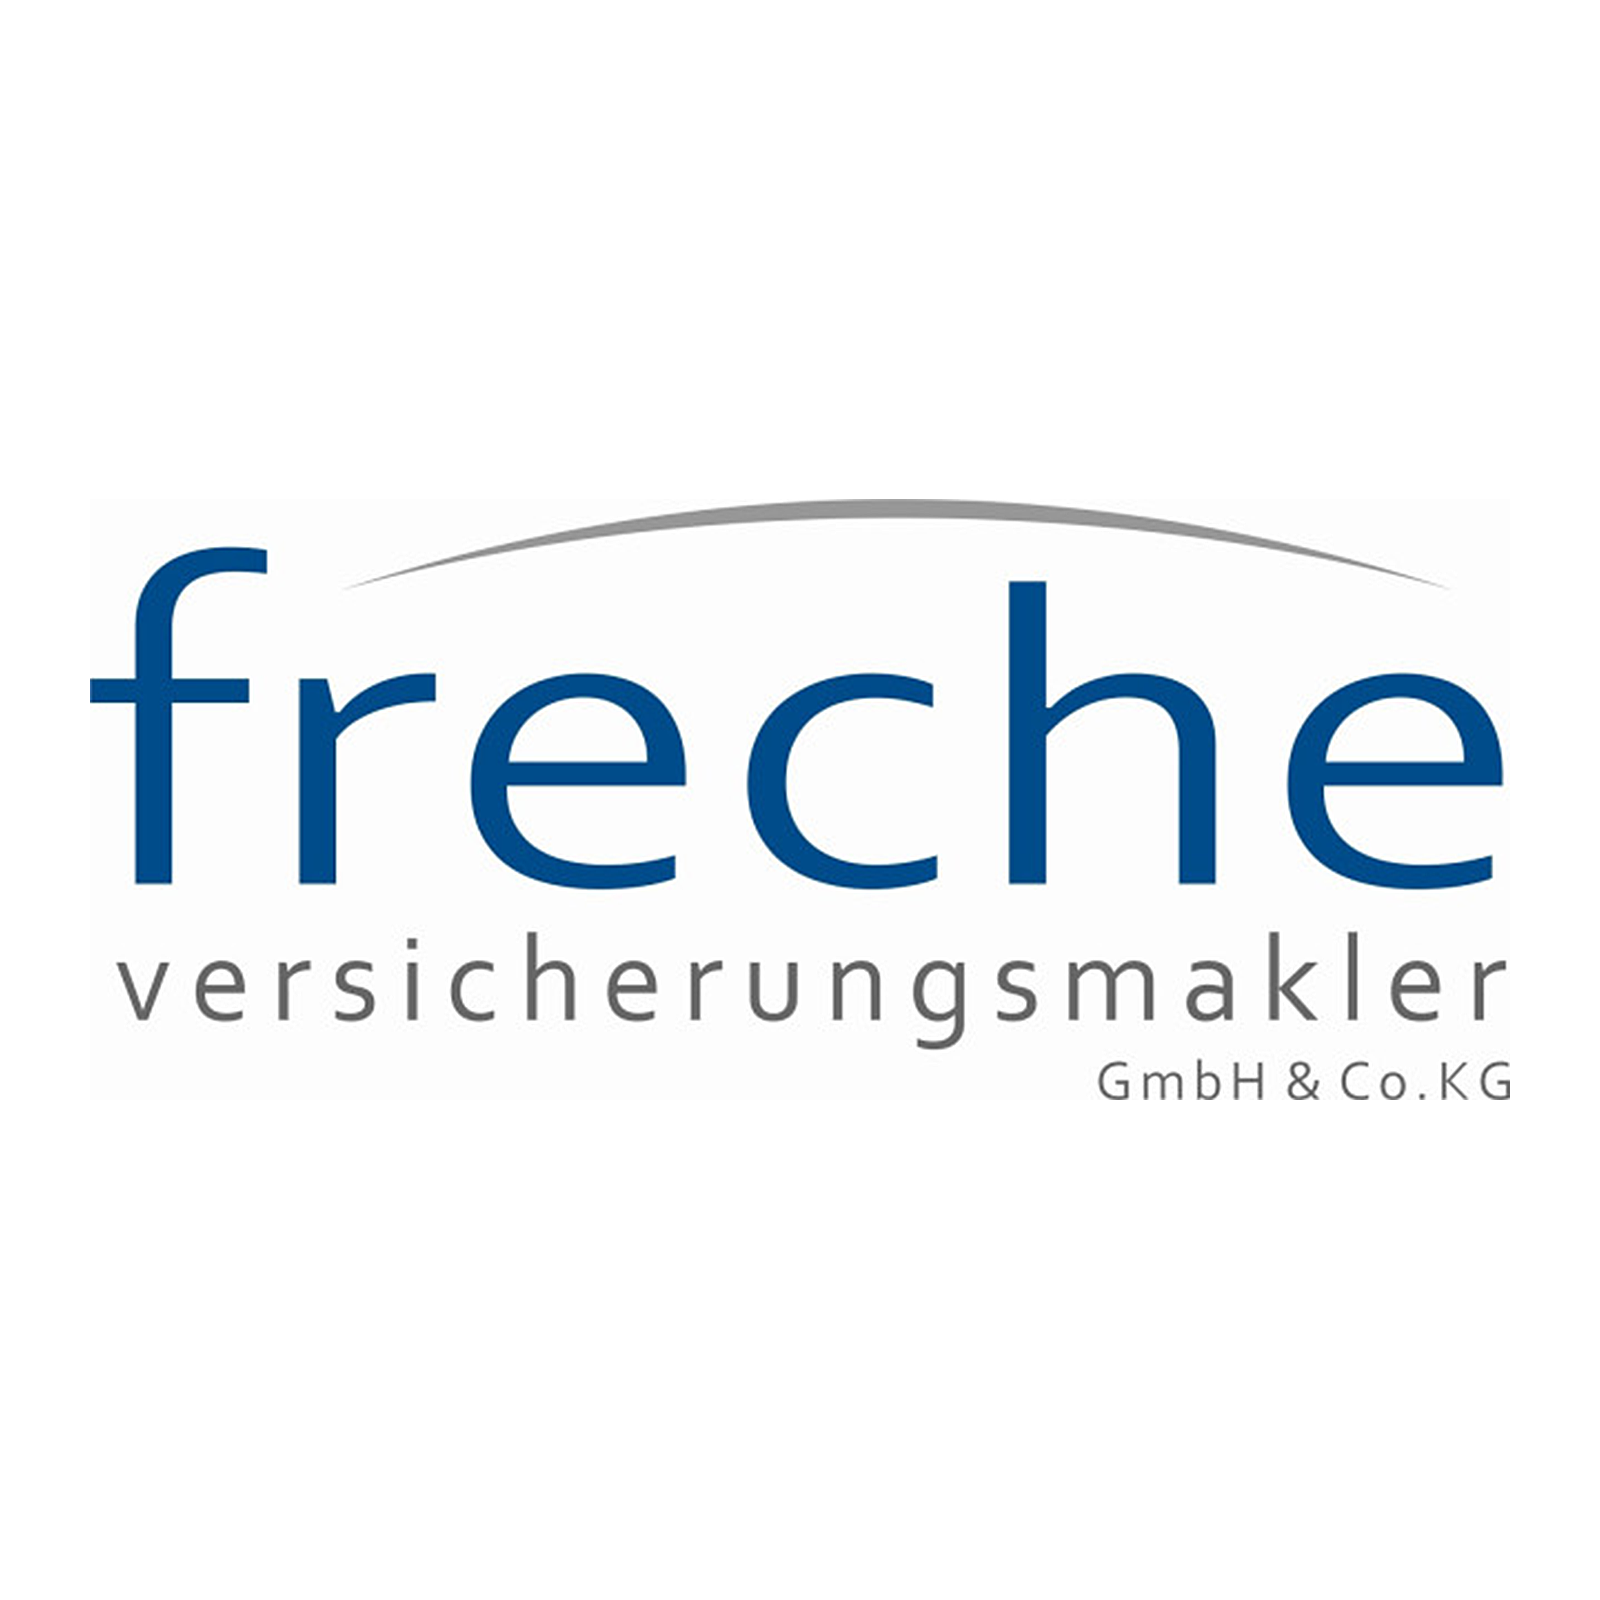 Logo von freche versicherungsmakler GmbH & Co. KG